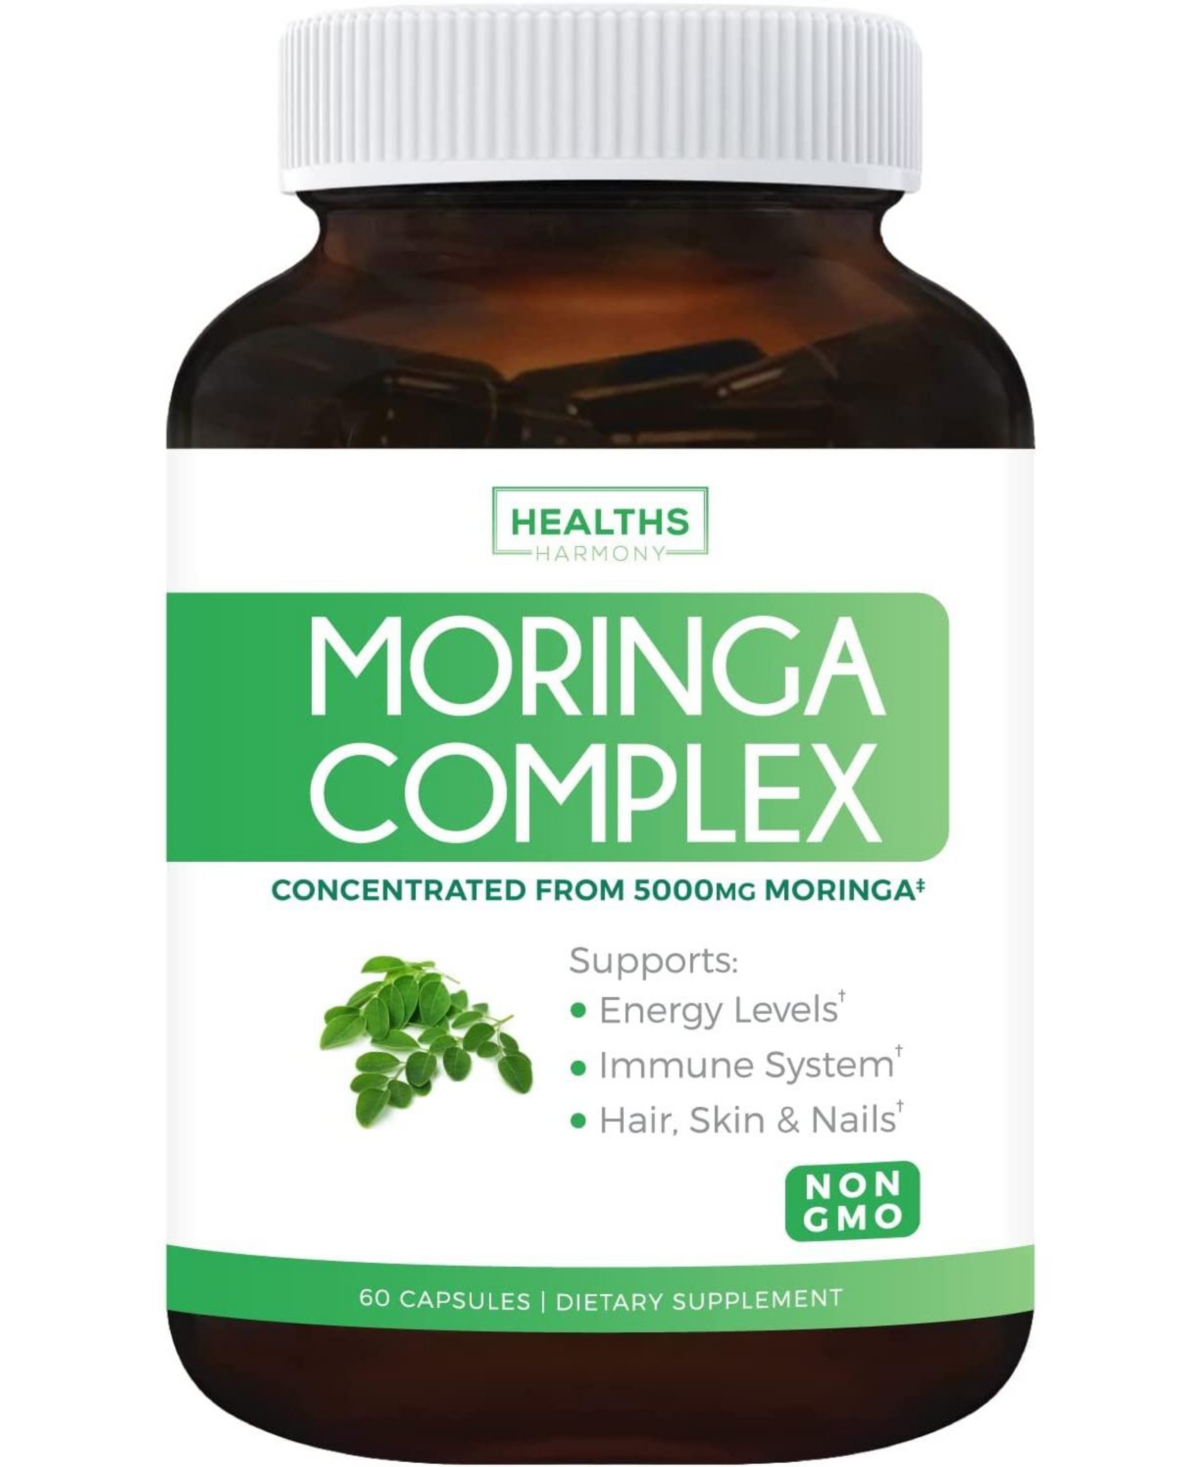 Moringa Capsules - 5,000mg Blend (Non-gmo) The Herbal Equivalent of 5,000mg Moringa Oleifera